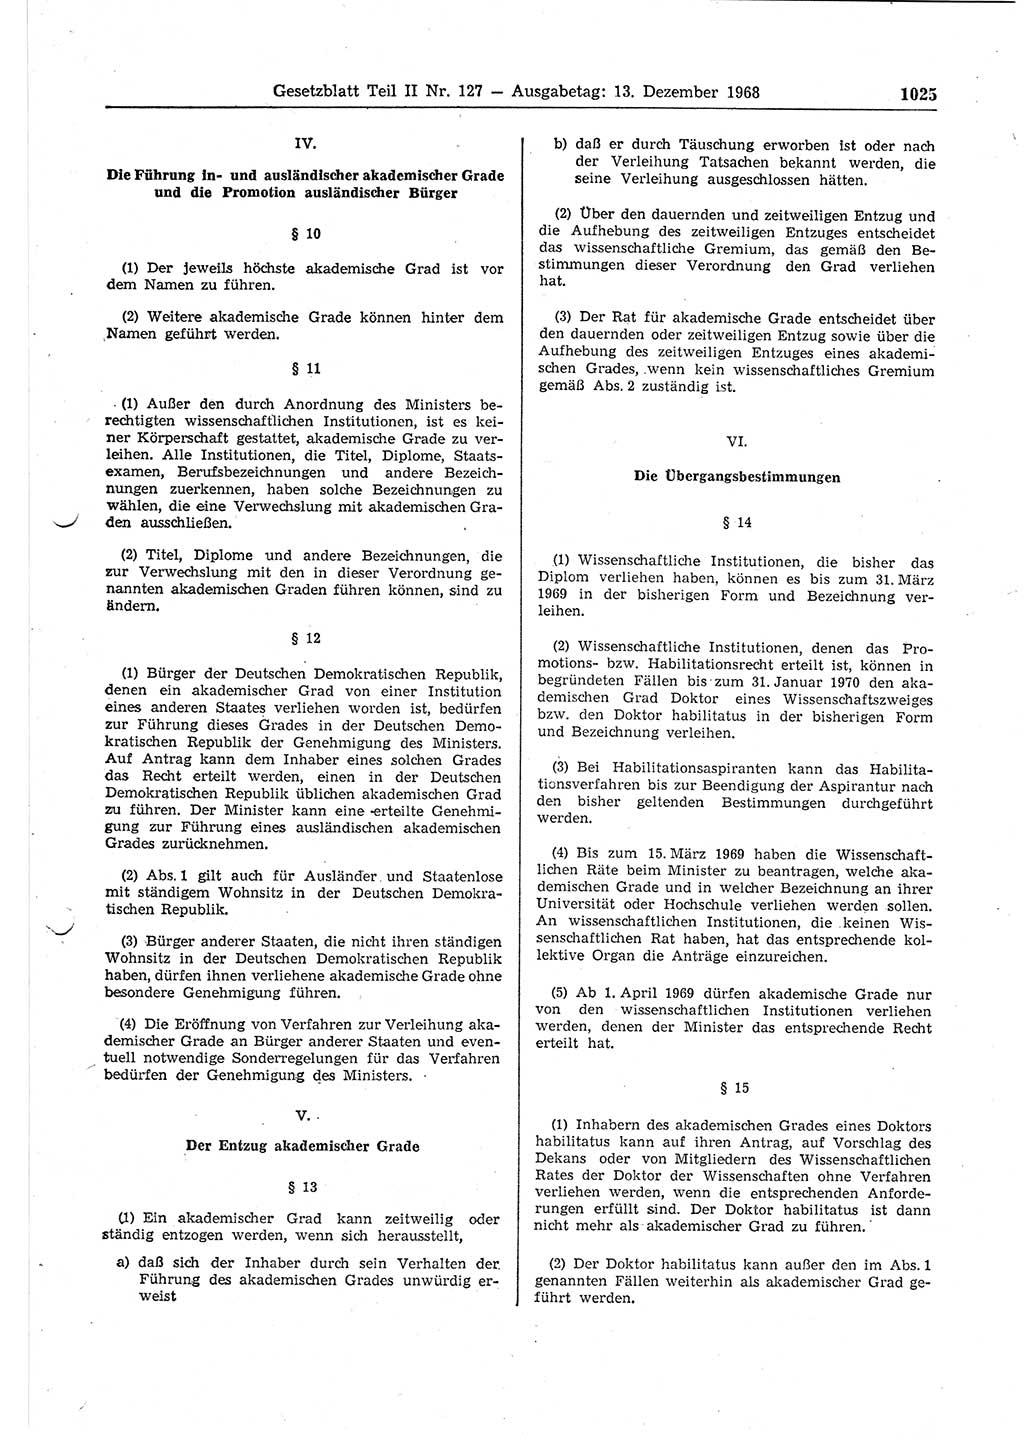 Gesetzblatt (GBl.) der Deutschen Demokratischen Republik (DDR) Teil ⅠⅠ 1968, Seite 1025 (GBl. DDR ⅠⅠ 1968, S. 1025)